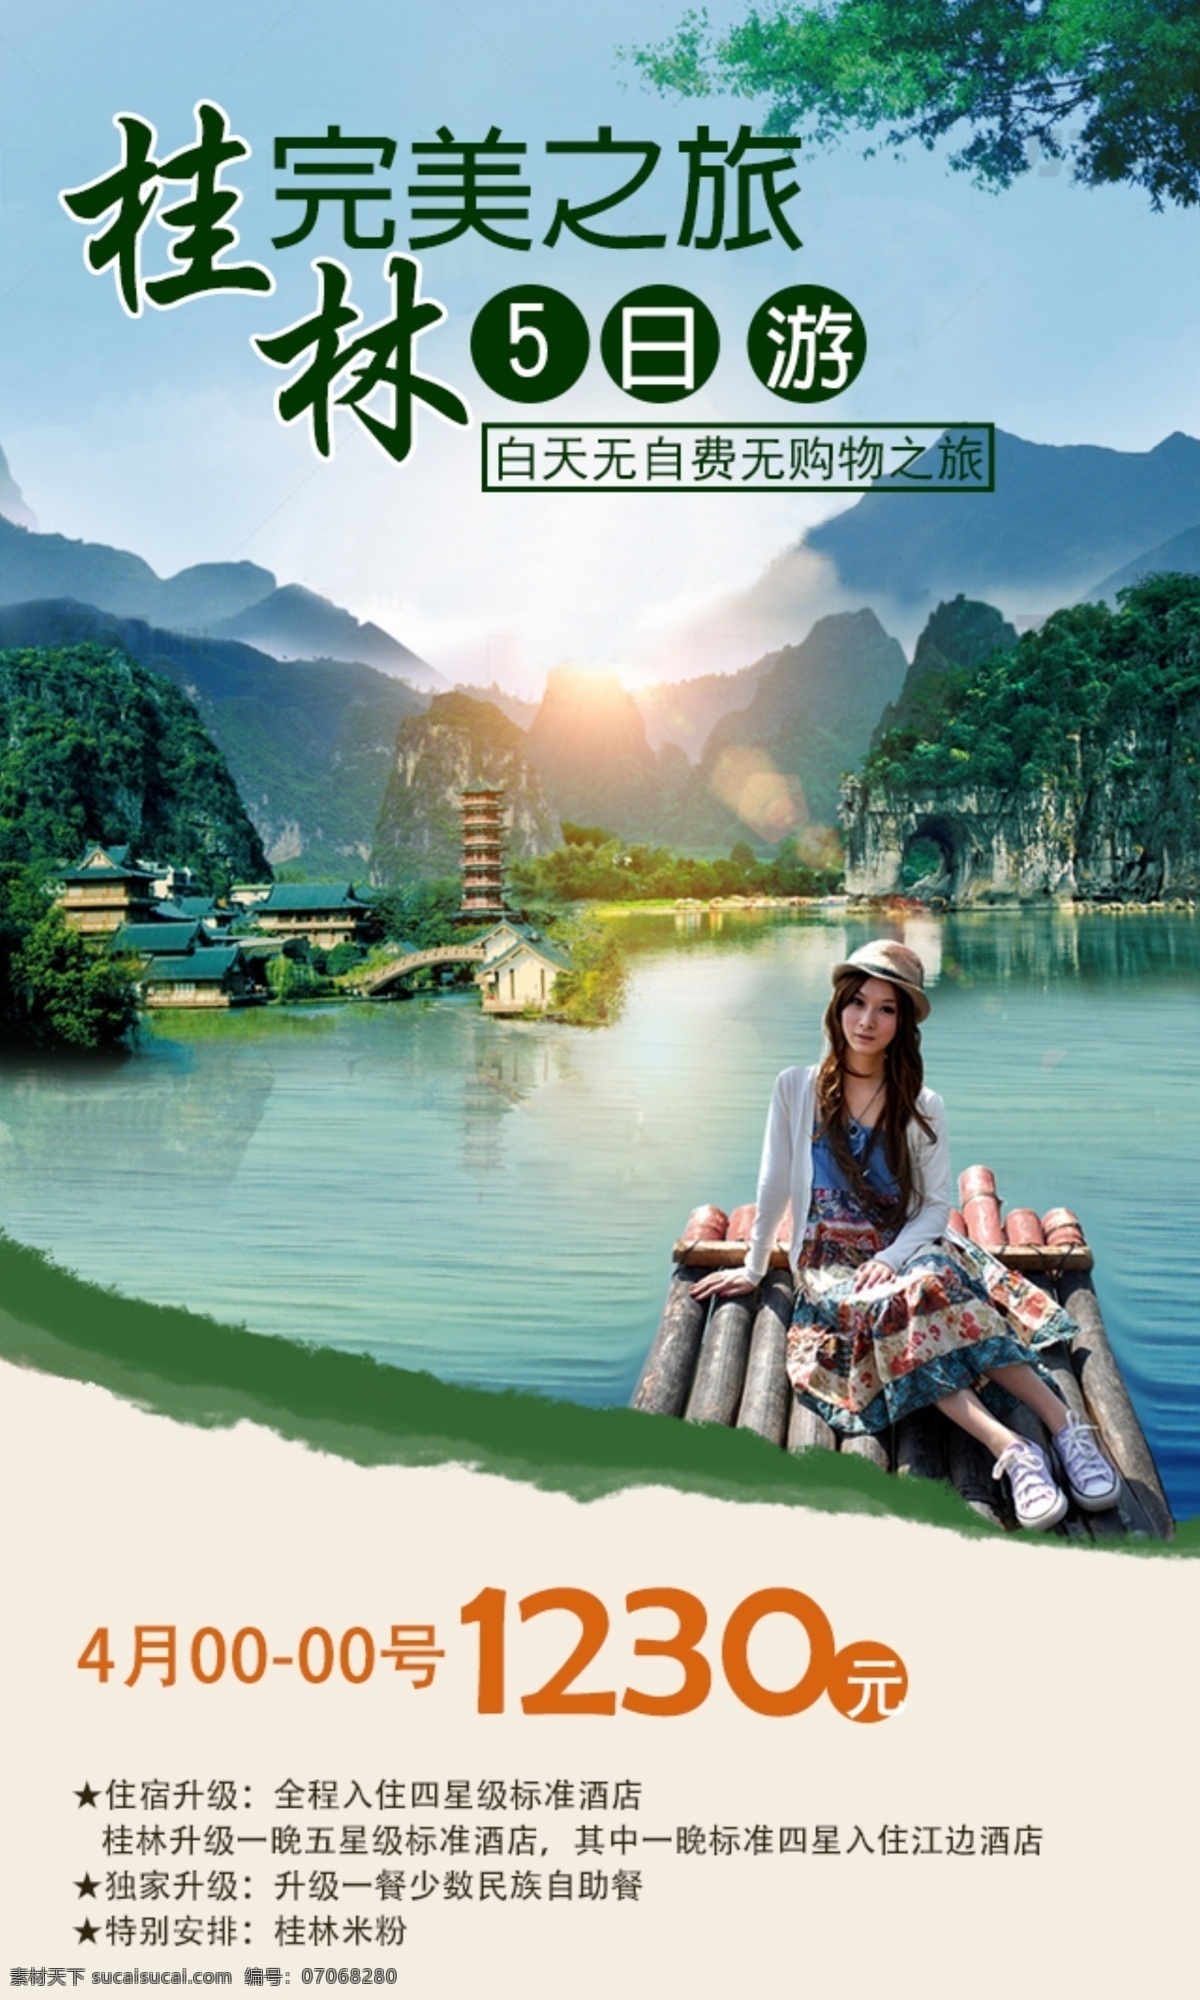 桂林 之旅 五日 游 清新 海报 绿色 山水